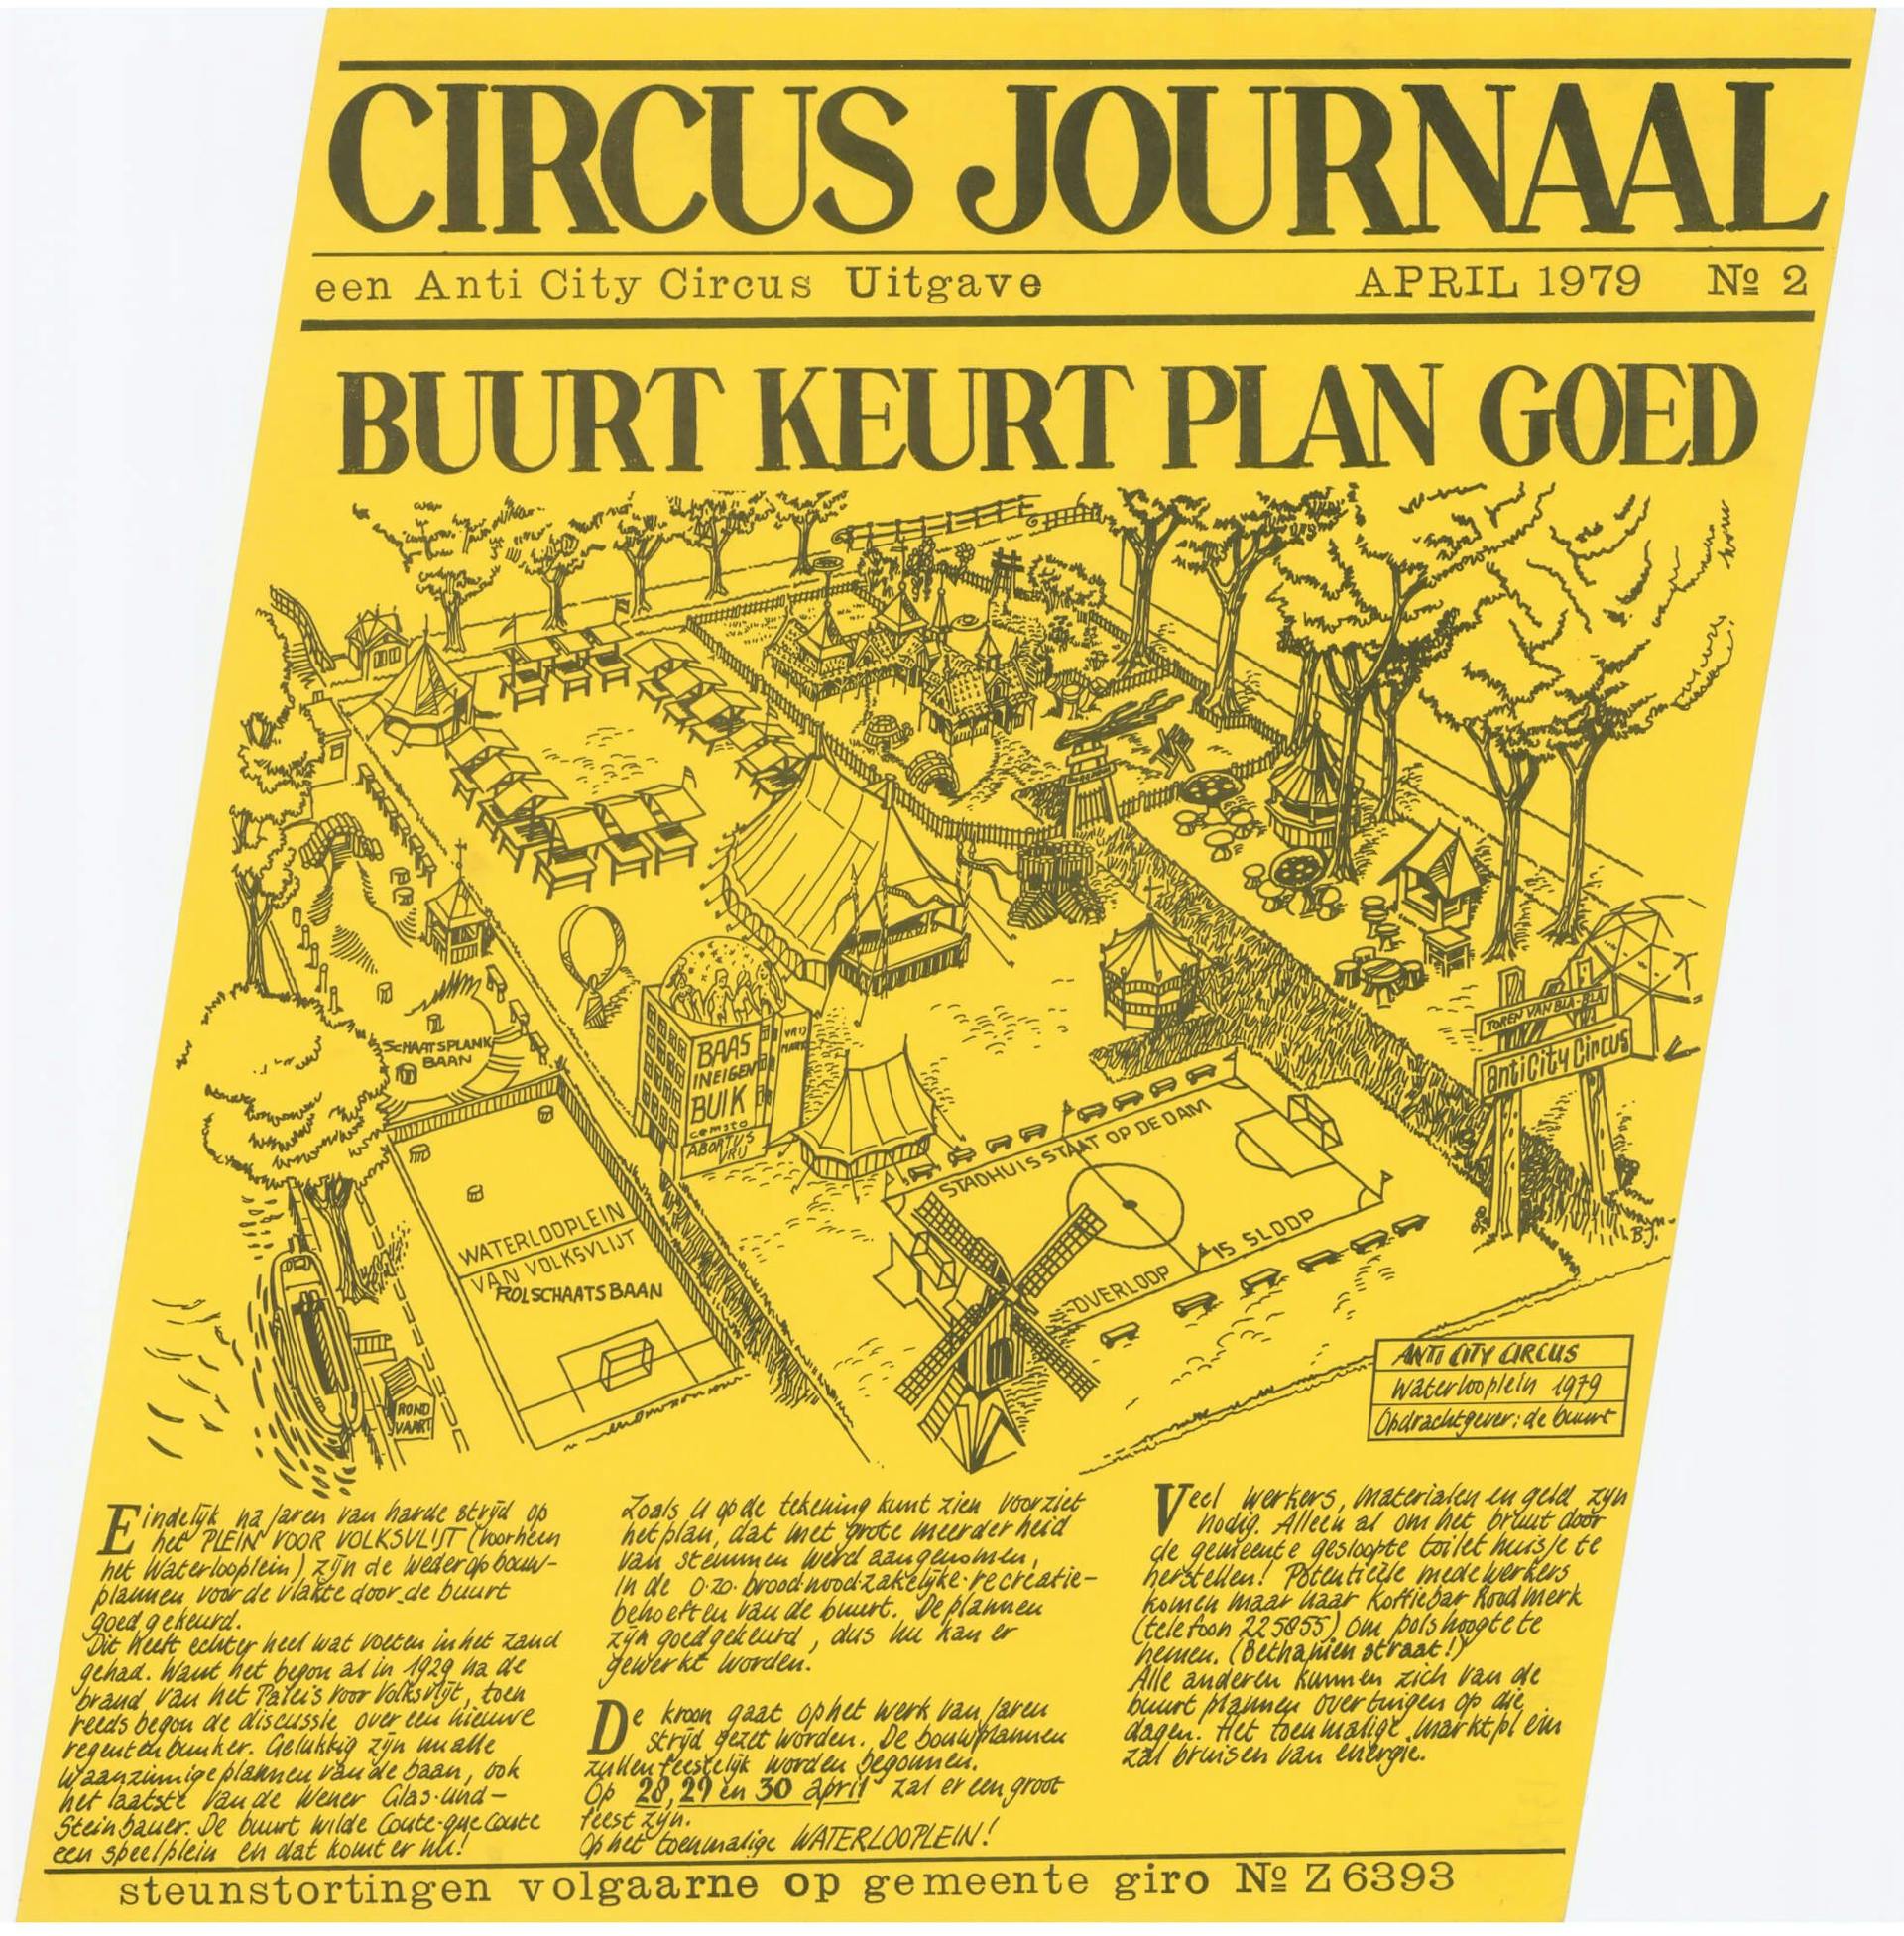 De actie- en buurtkrant Het Circus Journaal voert actie voor een speelplein op het Waterlooplein (Amsterdam) en is voor deel gemaakt met wrijfletters, 1979.